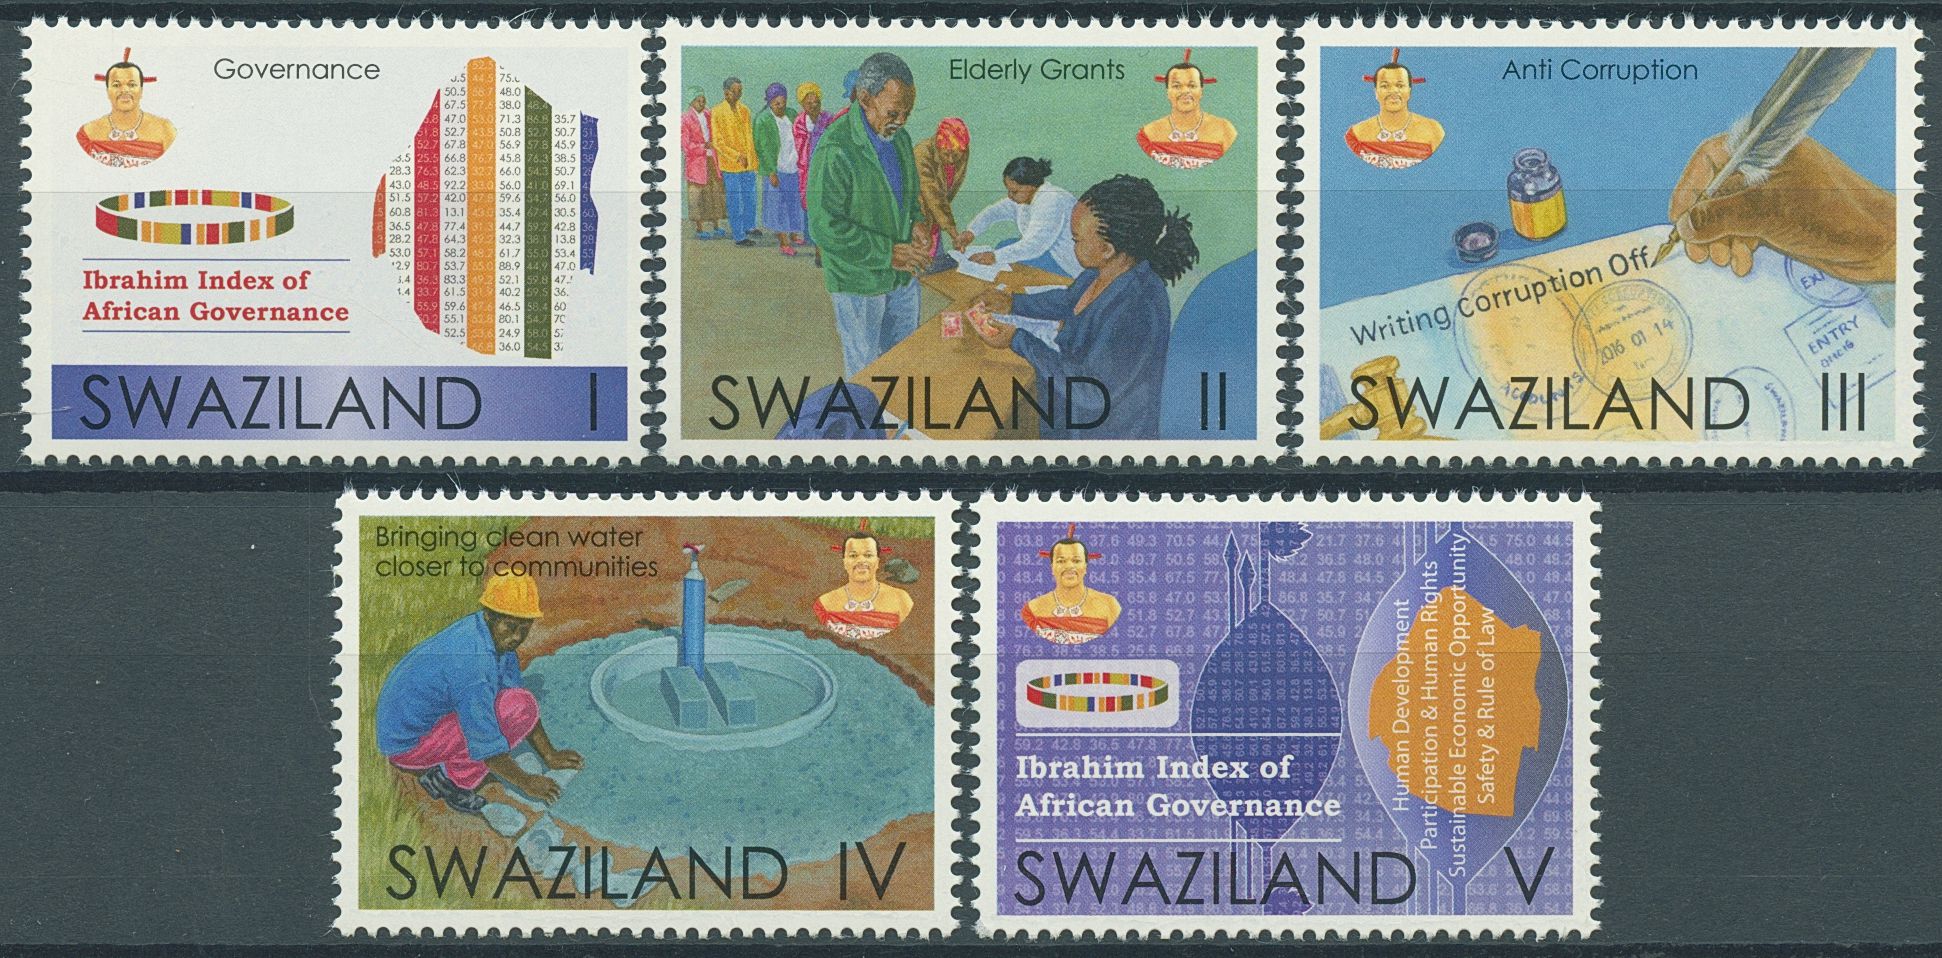 Swaziland 2016 MNH Cultures Stamps Ibrahim Index of African Governance Politics 5v Set